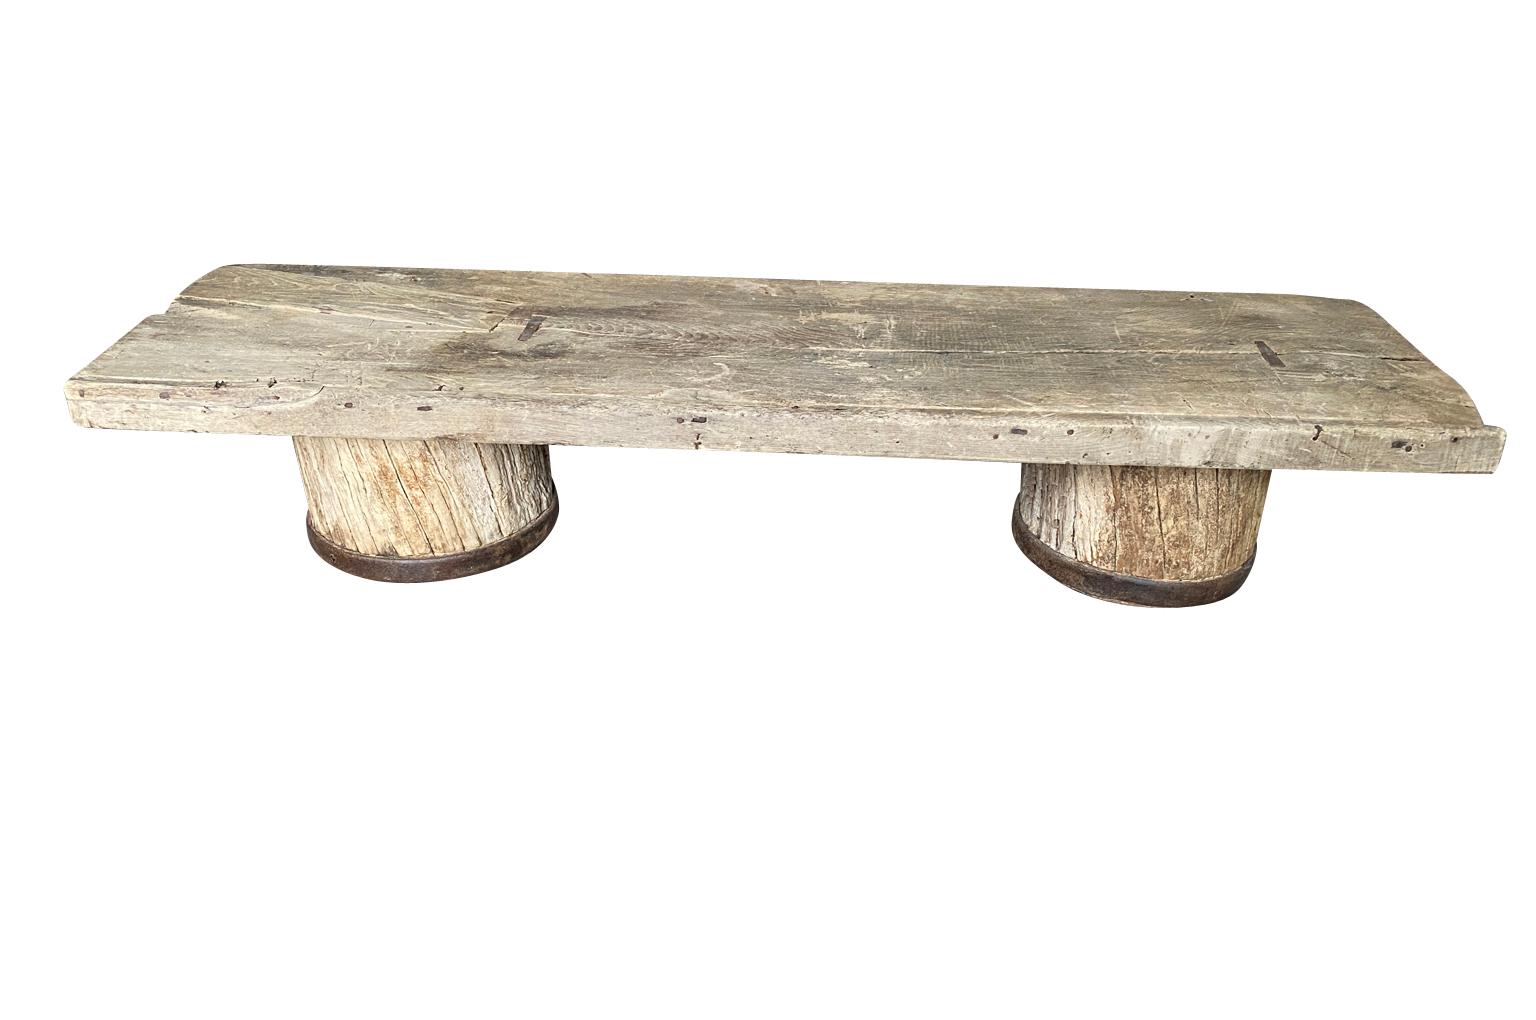 Une sensationnelle Table Basse du 18ème siècle du Sud de la France.  Merveilleusement construit à partir d'un plateau en bois massif magnifiquement patiné et de pieds taillés dans des colonnes en chêne naturellement lavé avec des fixations en fer. 